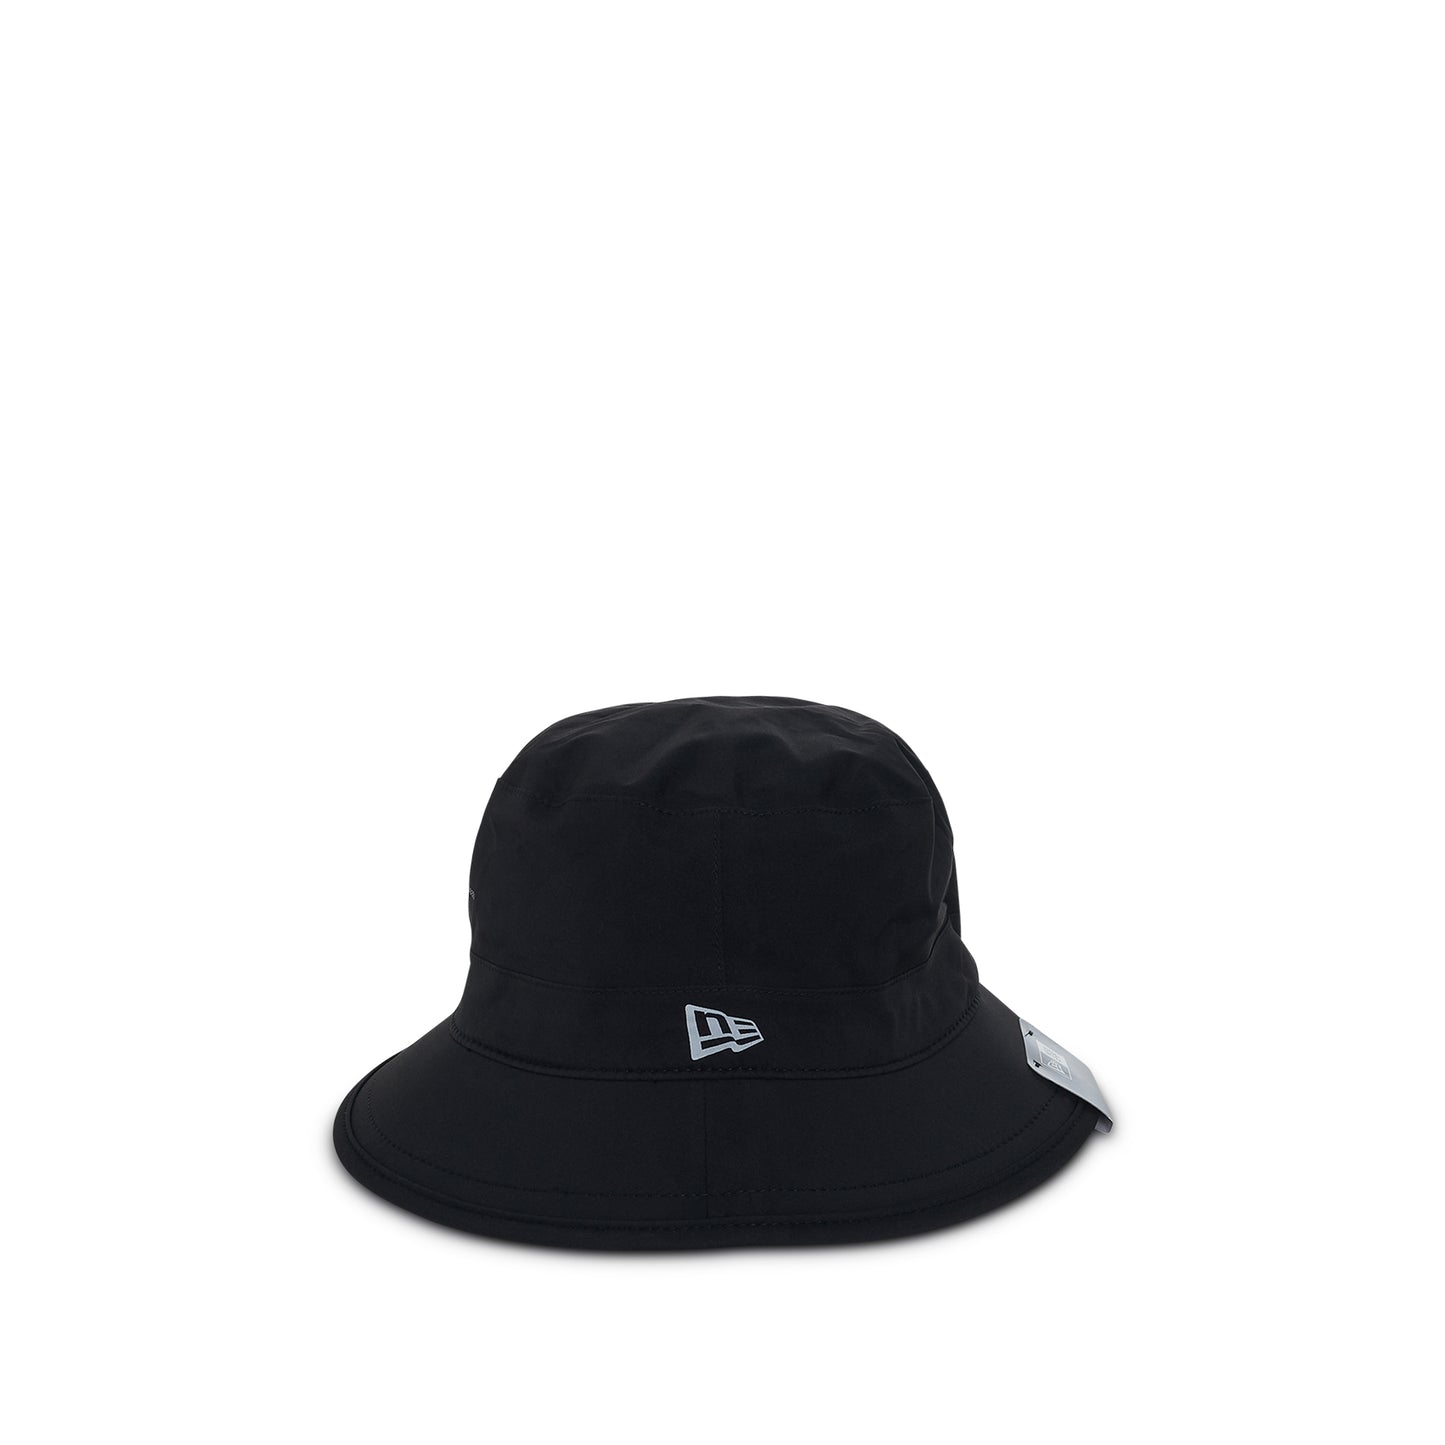 11 BBS Gore-Tex Bucket Hat